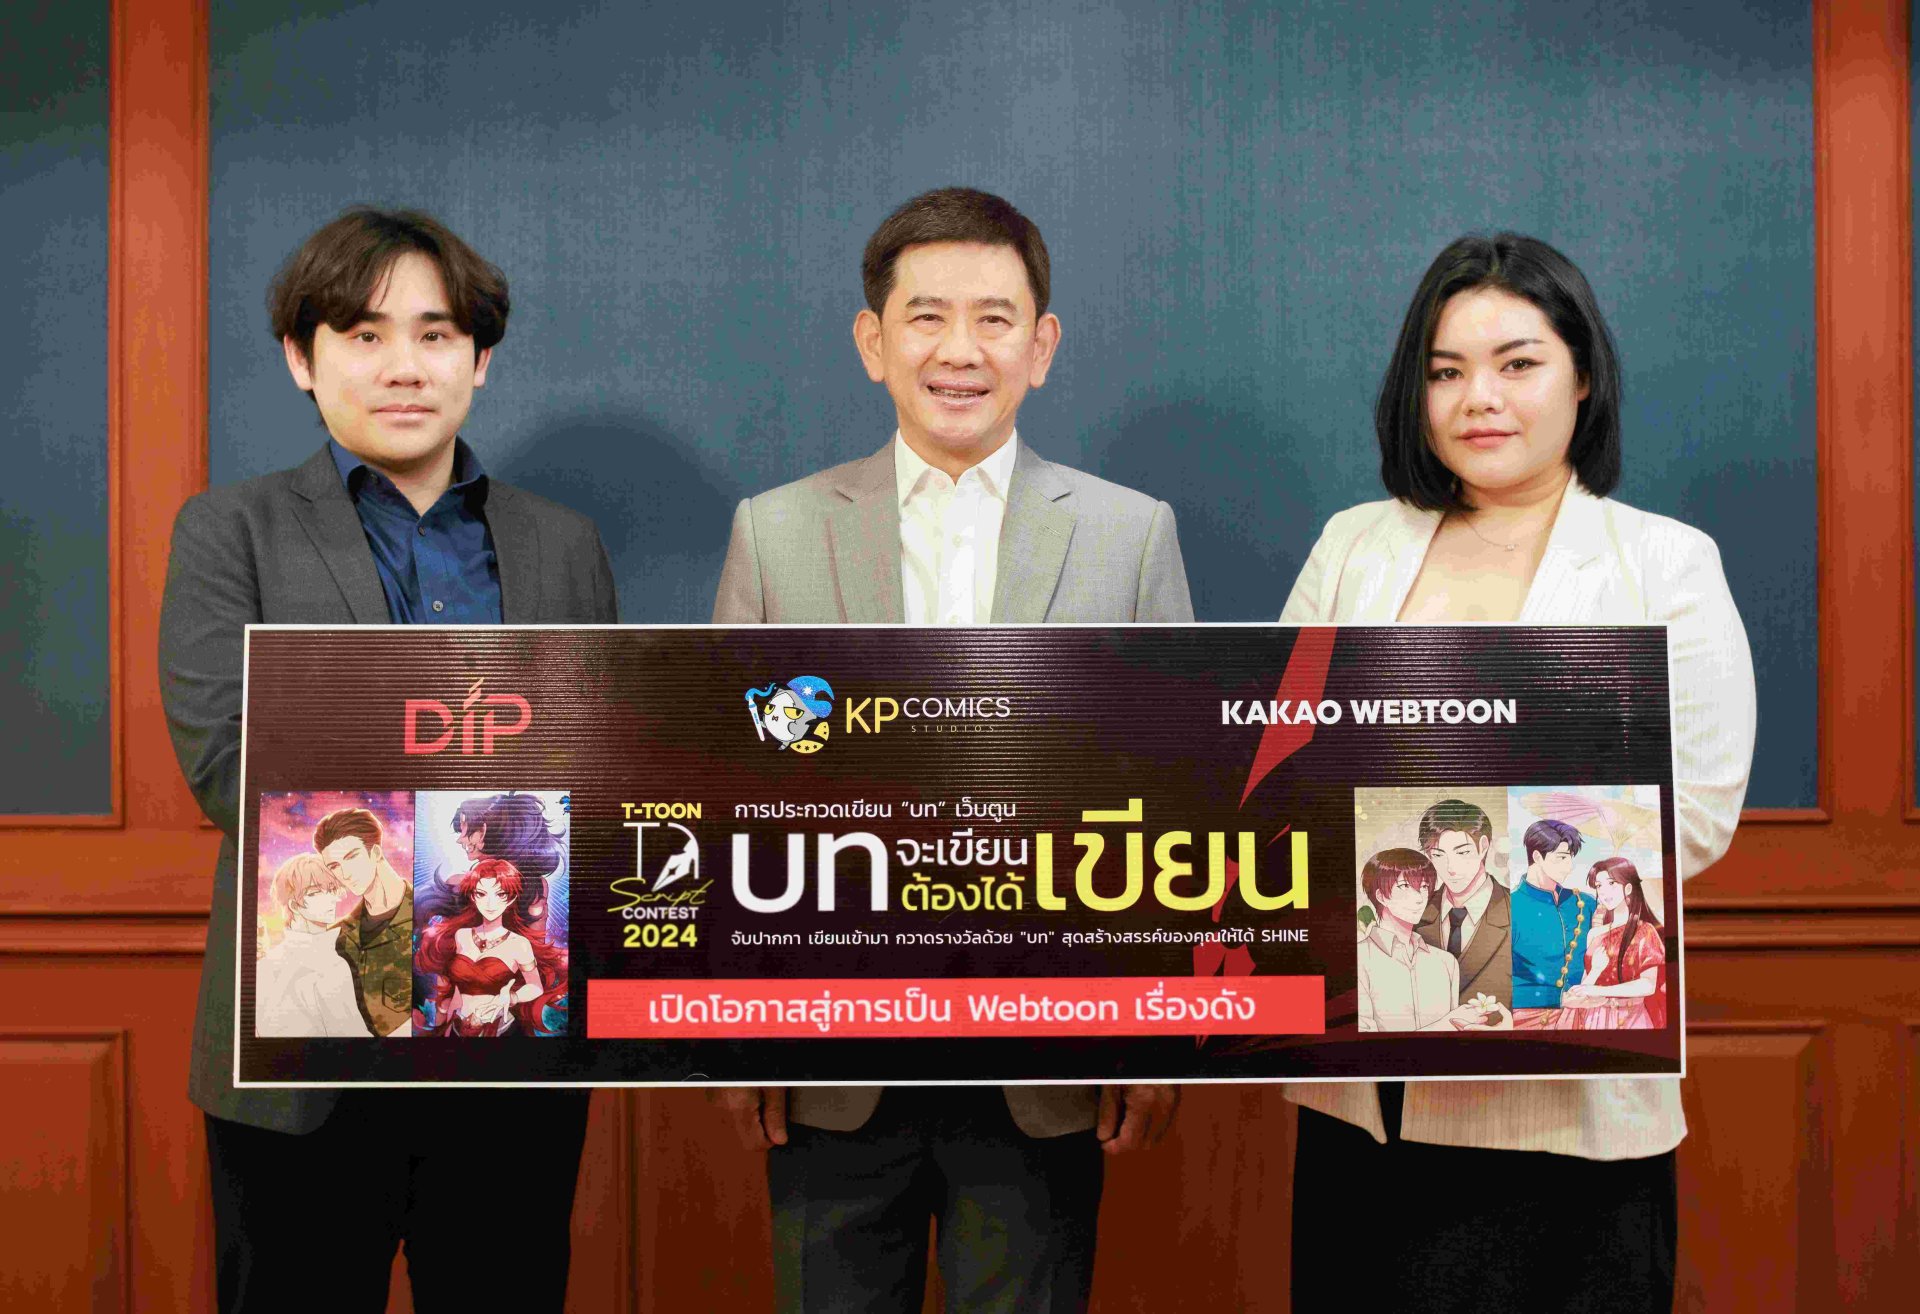 เปิดโอกาสสู่การเป็น Webtoon เรื่องดังบน KAKAO WEBTOON Thailand ปลดปล่อยไอเดียสุดพลังชาวครีเอเตอร์ ในโครงการ “บทจะเขียนต้องได้เขียน” T-TOON Script Contest 2024 ชิงเงินรางวัลรวมกว่า 300,000 บาท พร้อมบินดูงานที่เกาหลี